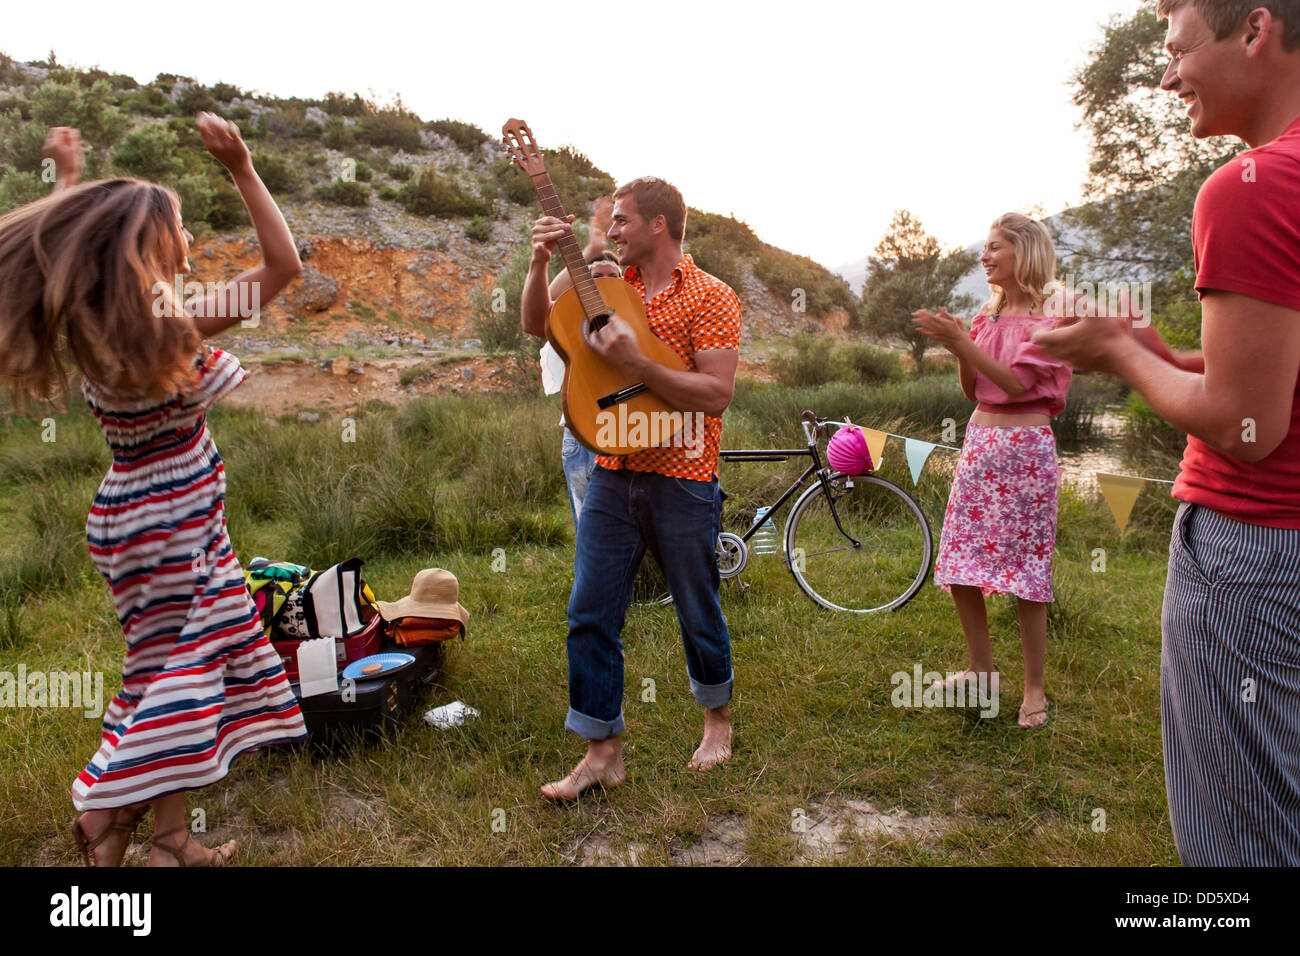 Croatia, Dalmatia, Young women dancing outdoors, man playing guitar Stock Photo